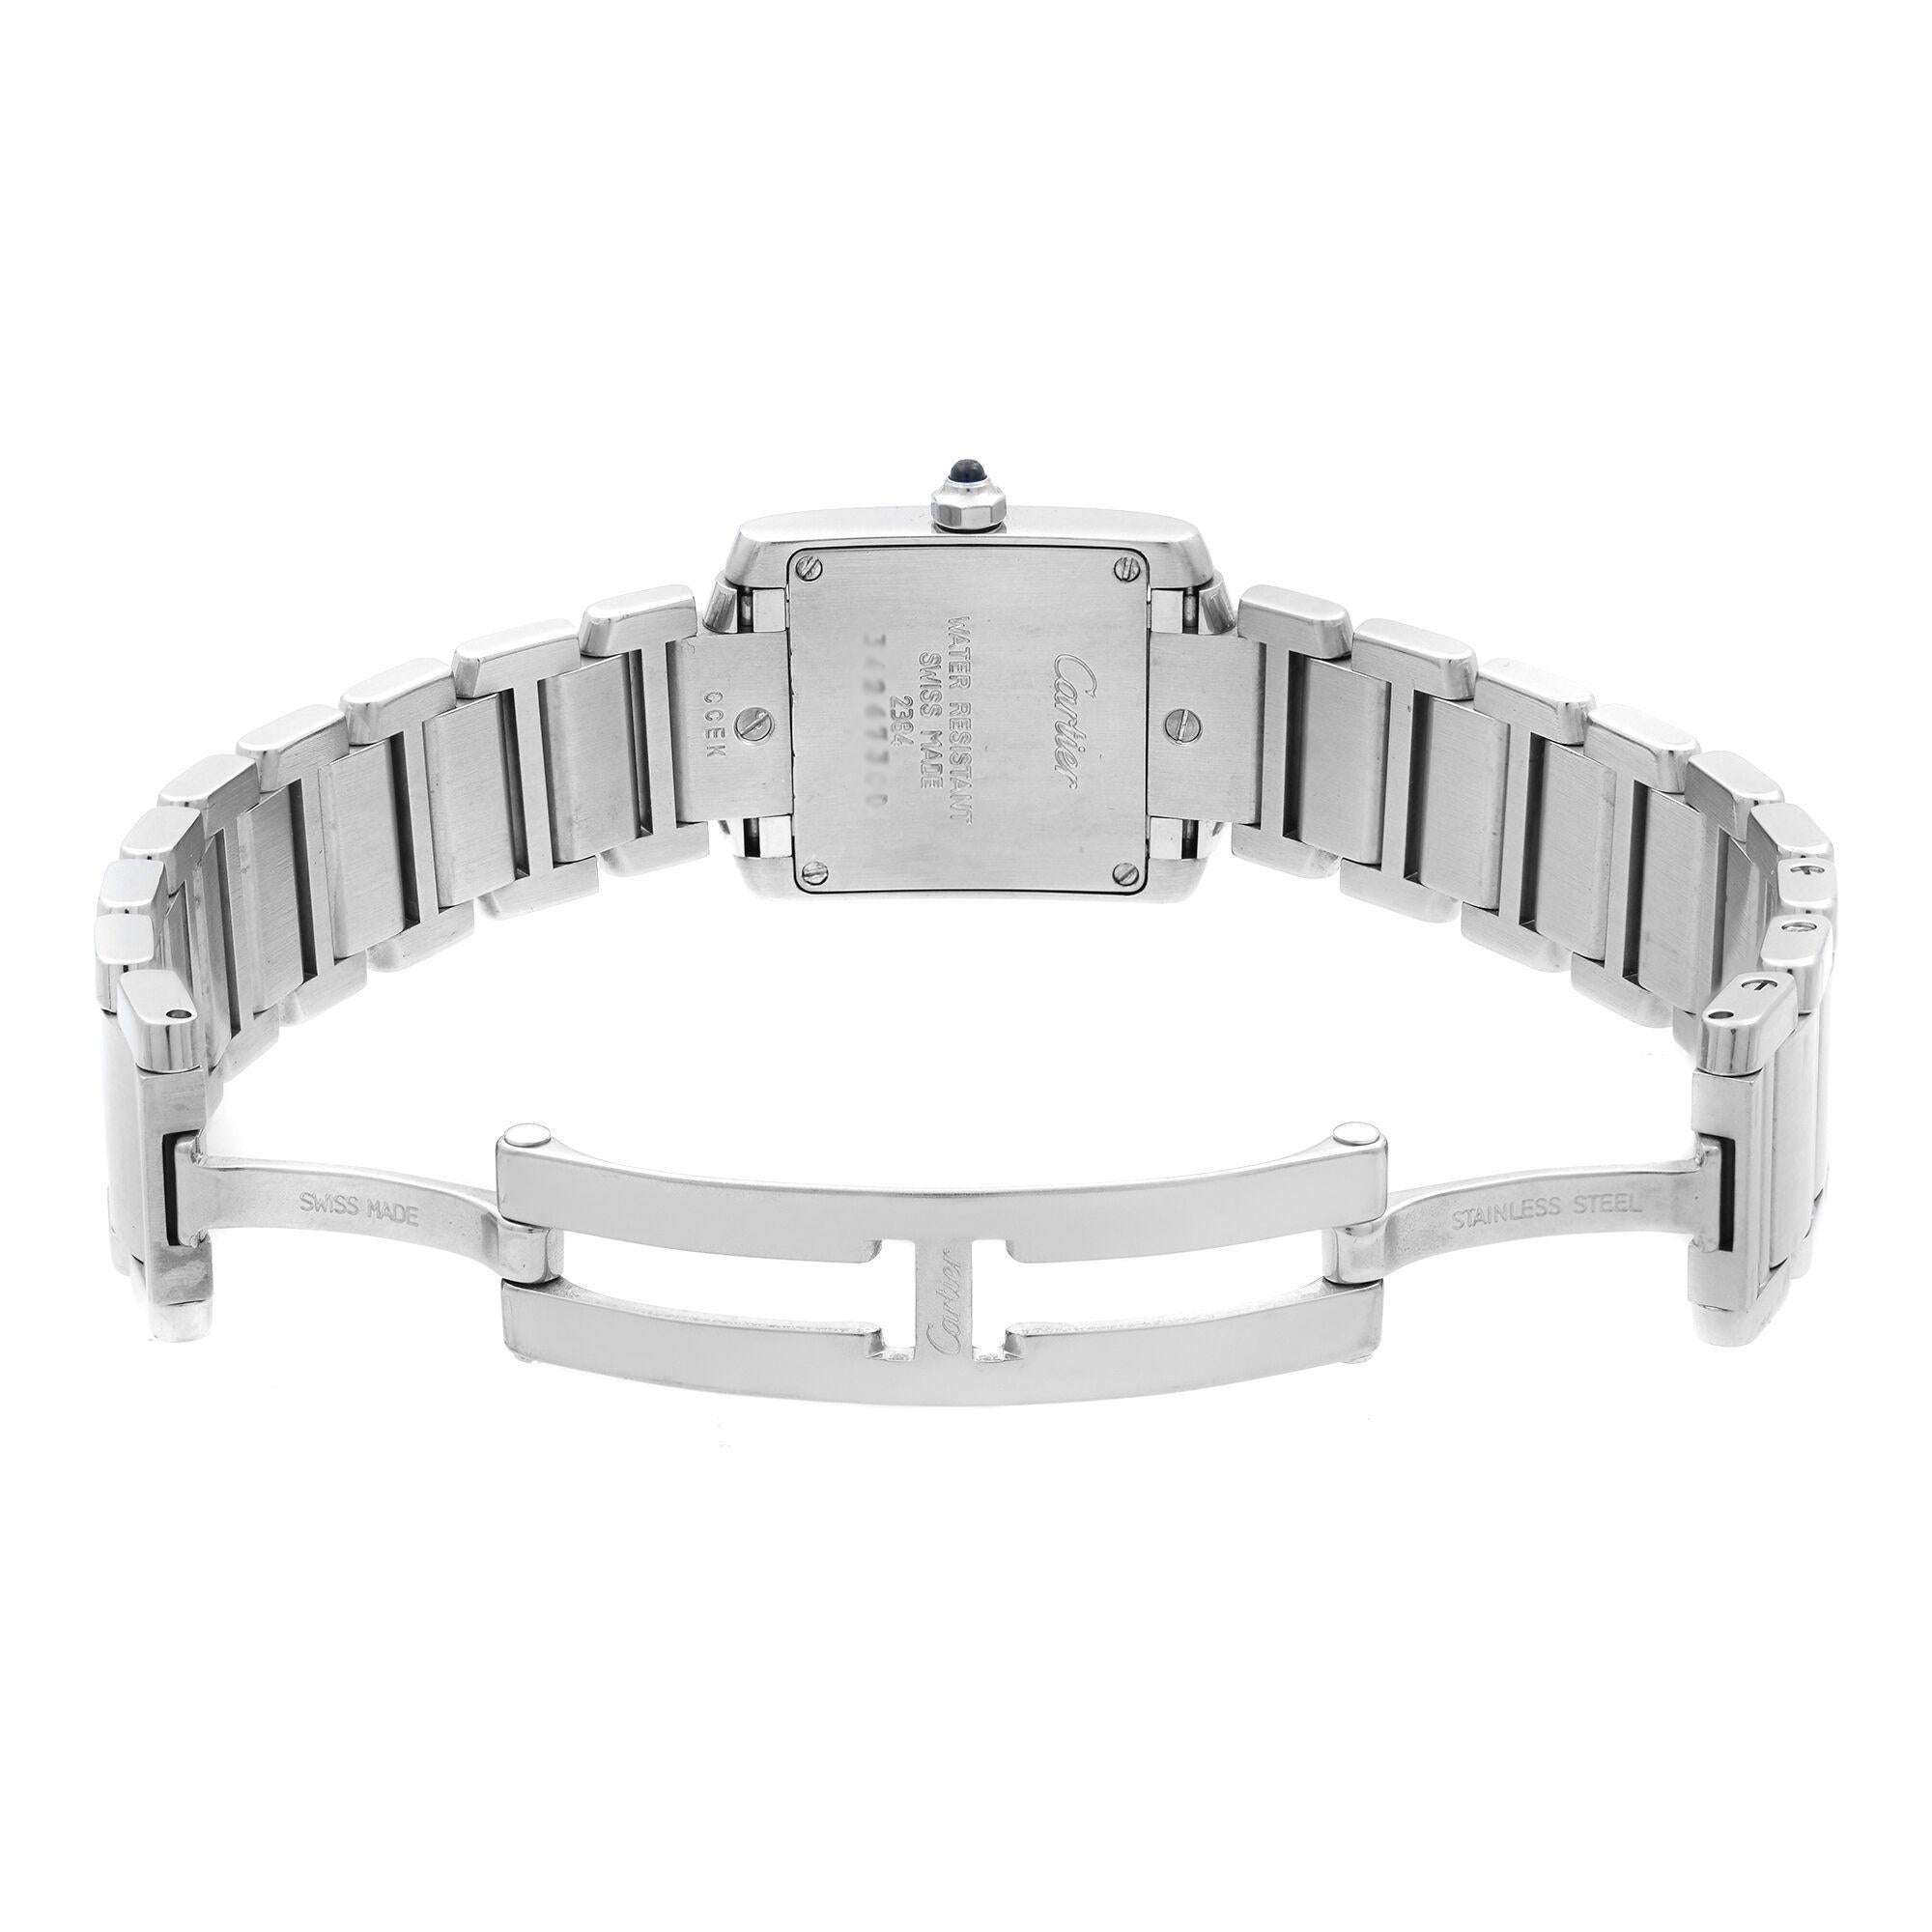 Cartier Tank Francaise Square Silver Dial Steel Quartz Ladies Watch W51008Q3 1